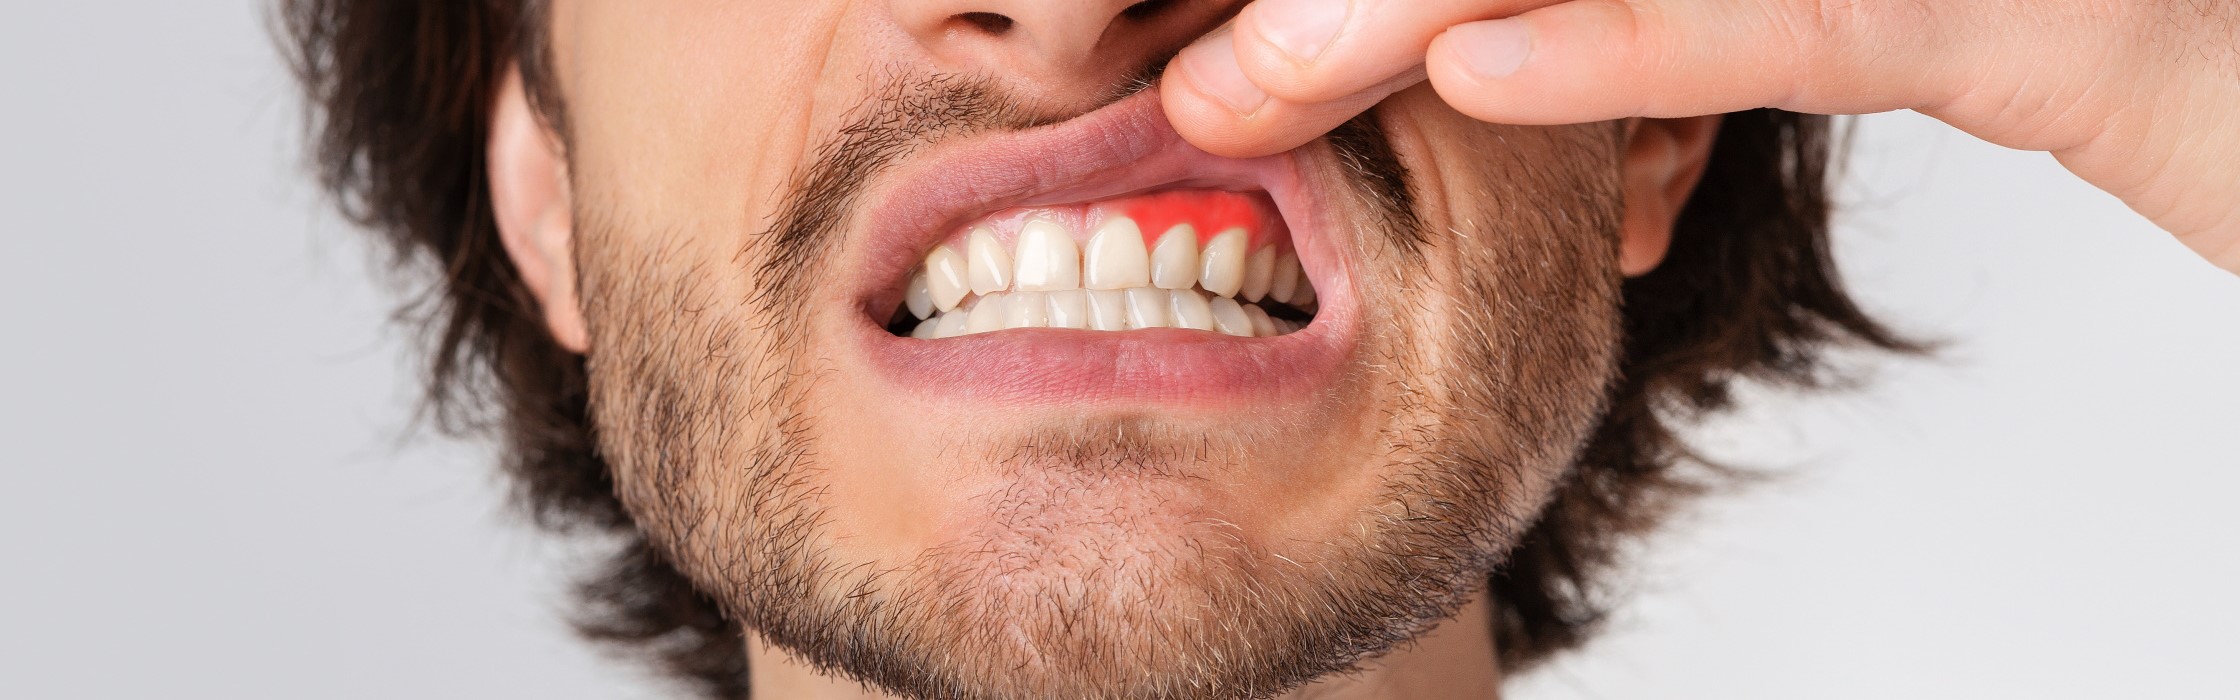 Zahnfleischentzündung – Symptome, Ursachen und alles zur Behandlung bei Ihrem Zahnarzt